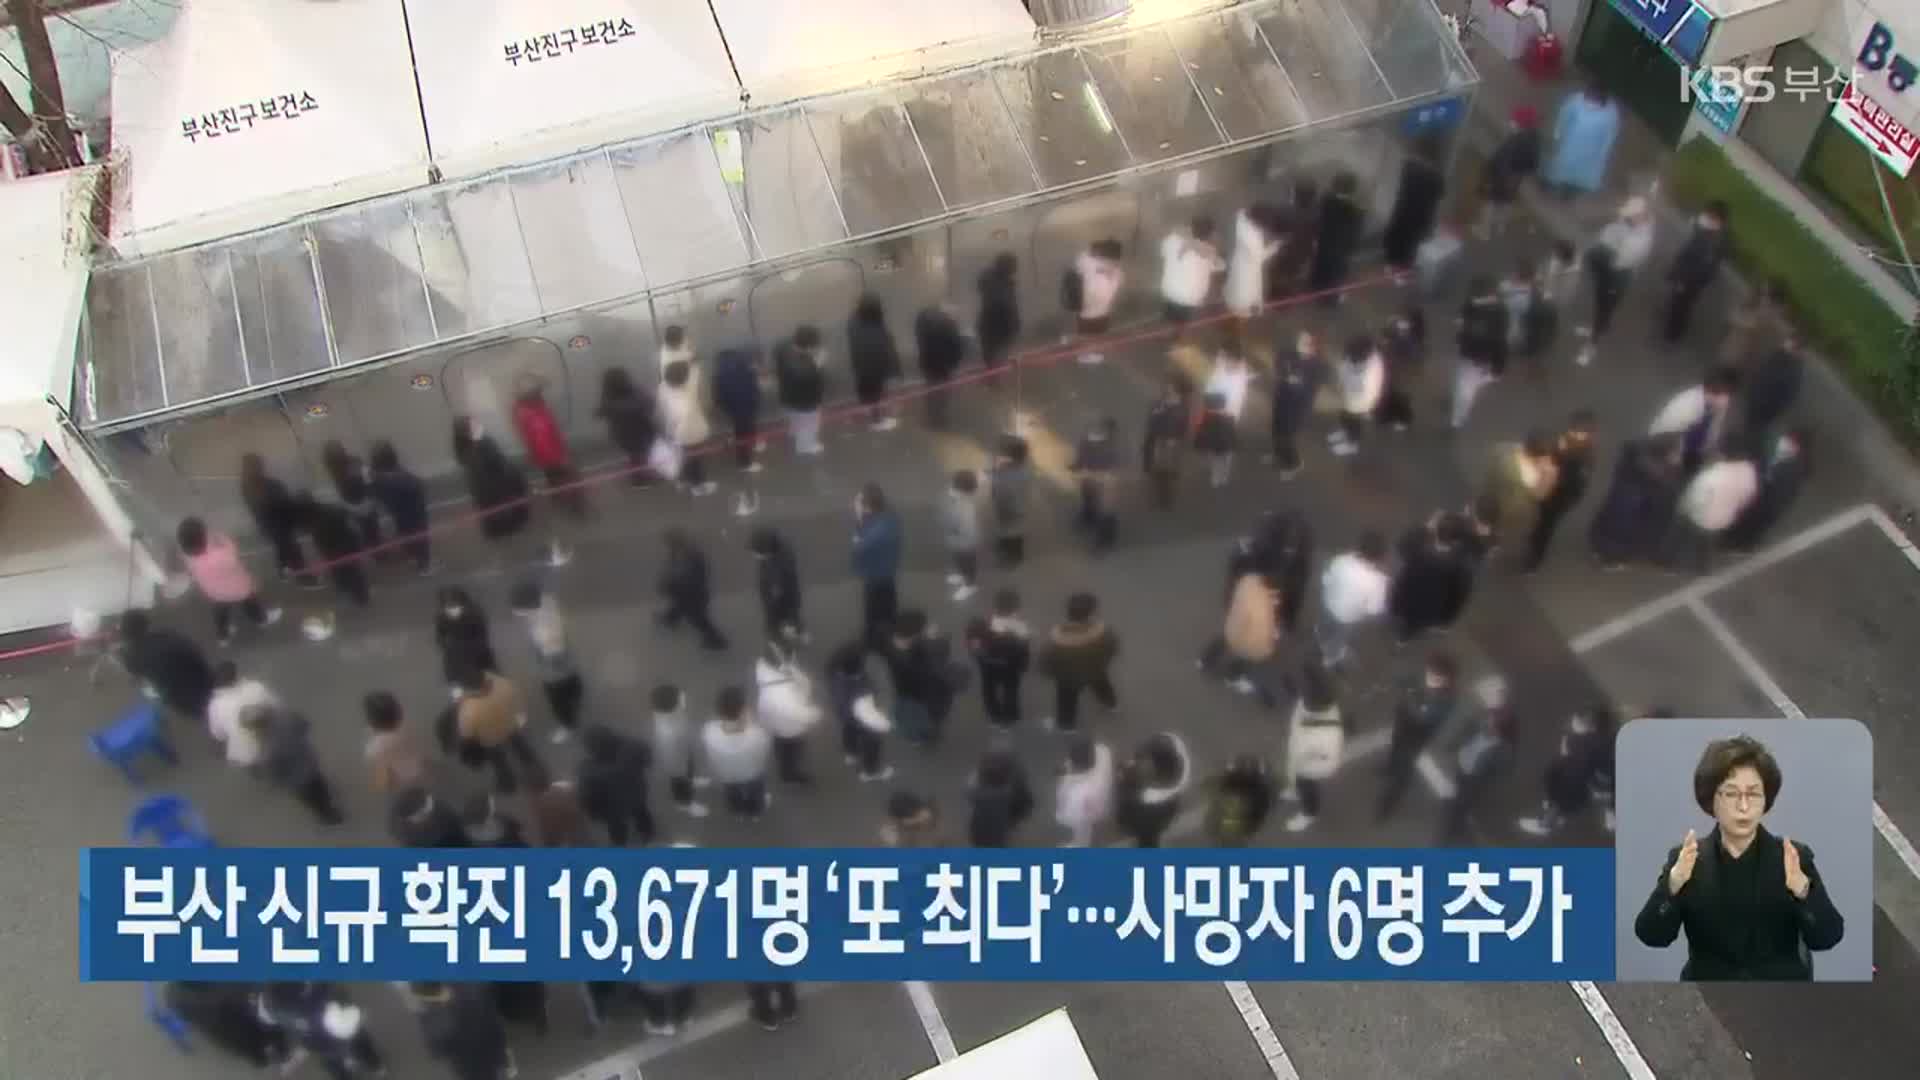 부산 신규 확진 13,671명 ‘또 최다’…사망자 6명 추가